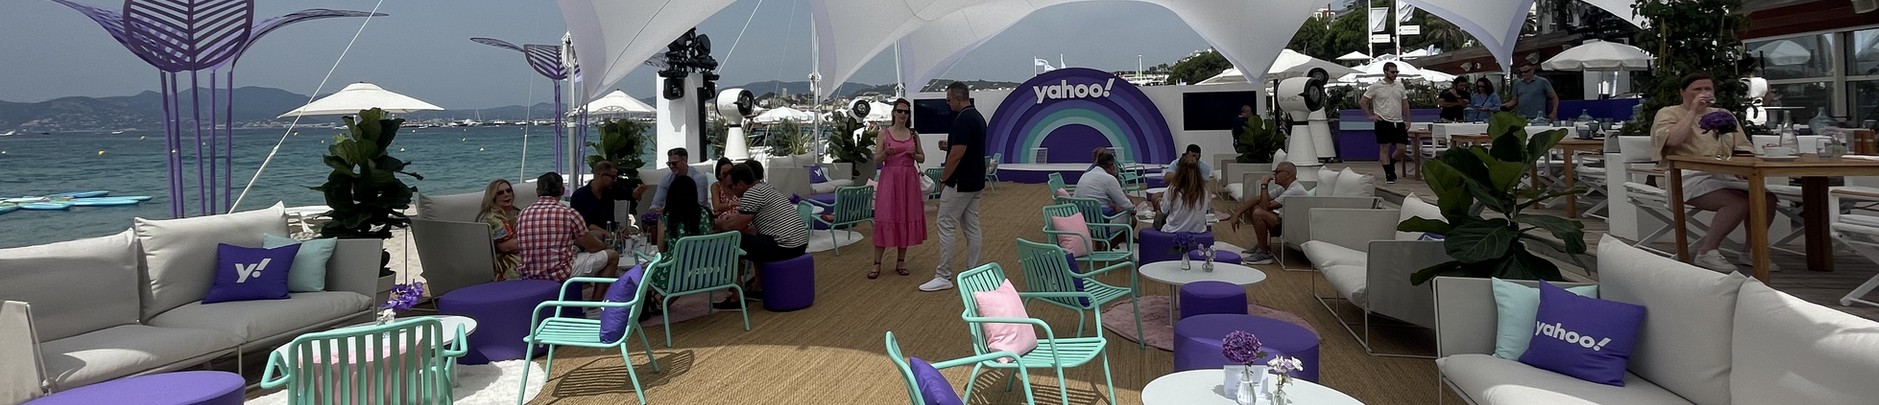 Yahoo! se destaca no Cannes Lions com uma área exclusiva para receber a comunidade criativa